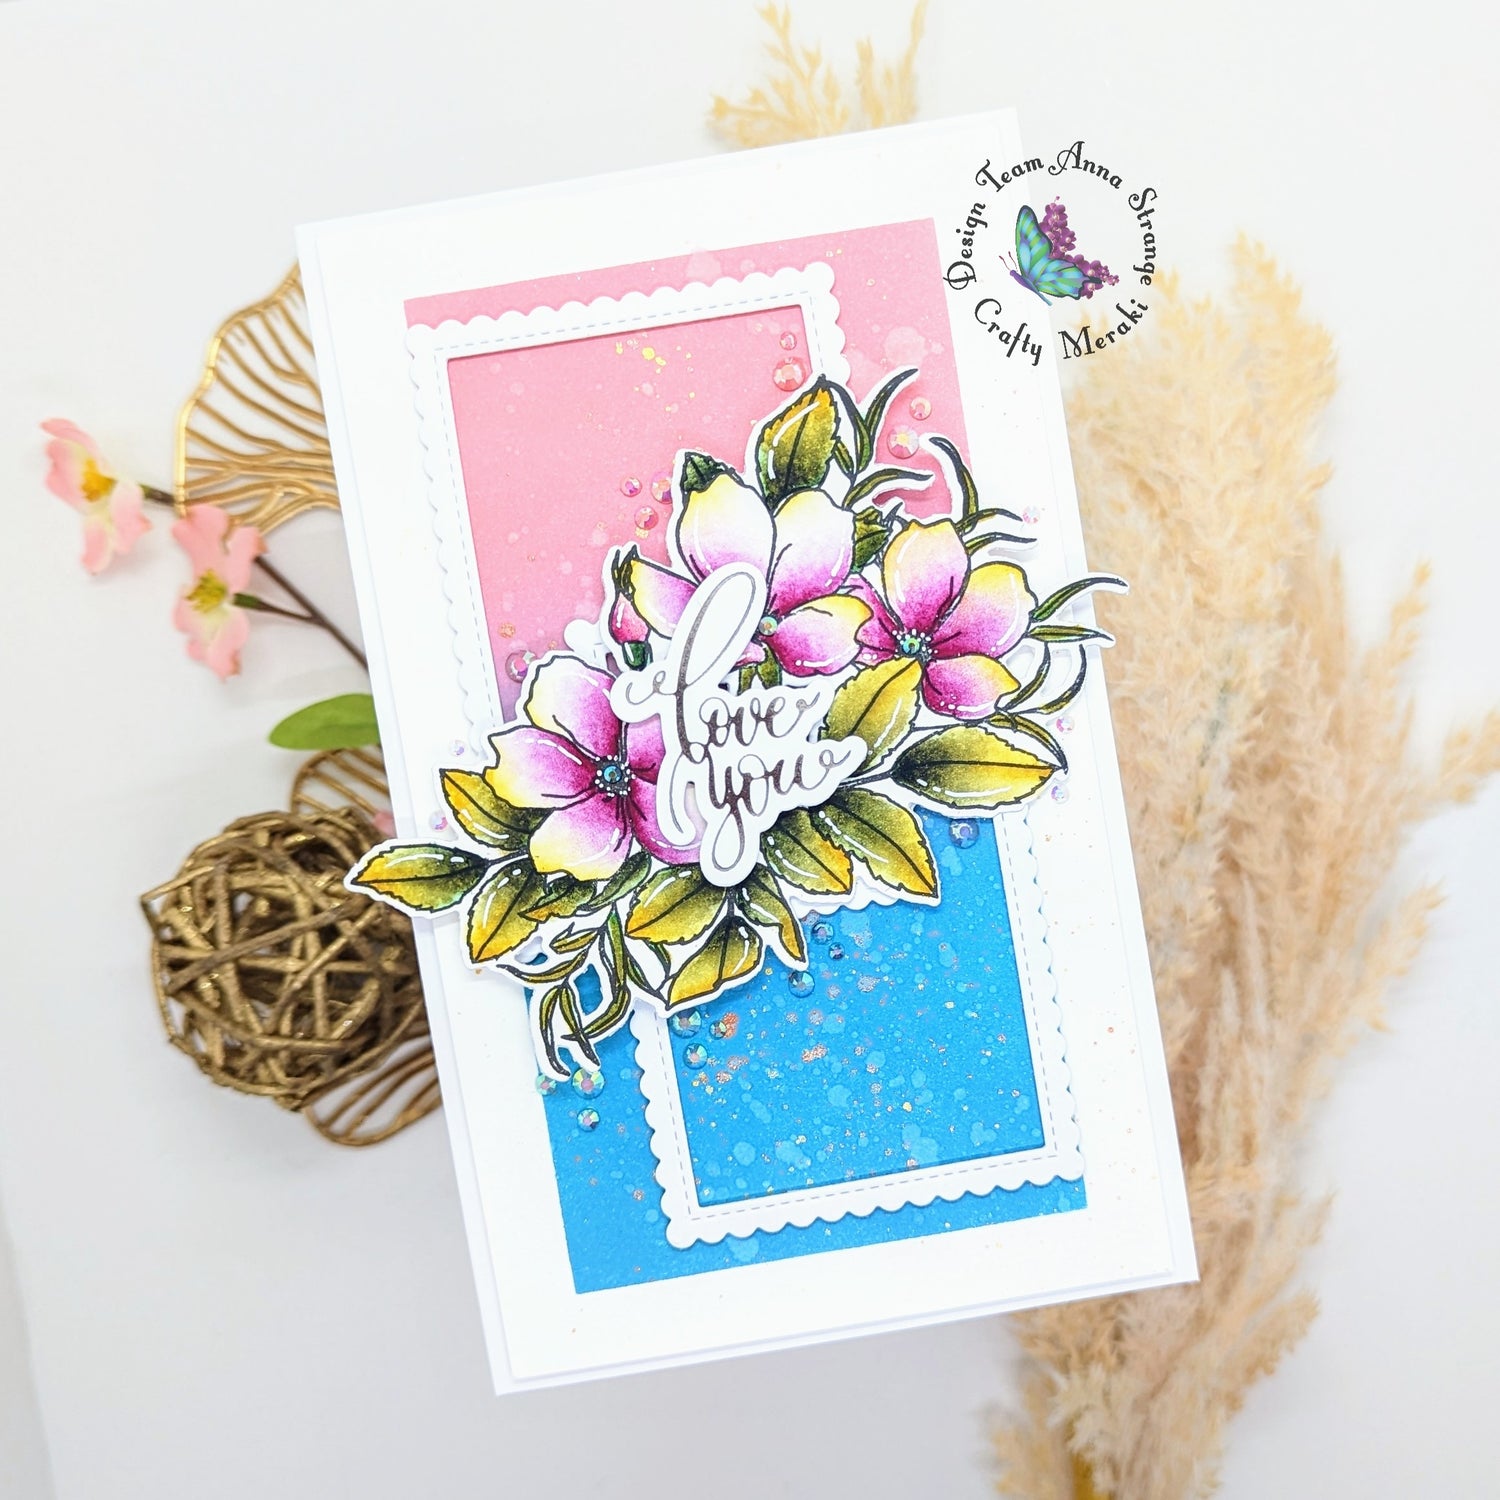 Love card by Anna